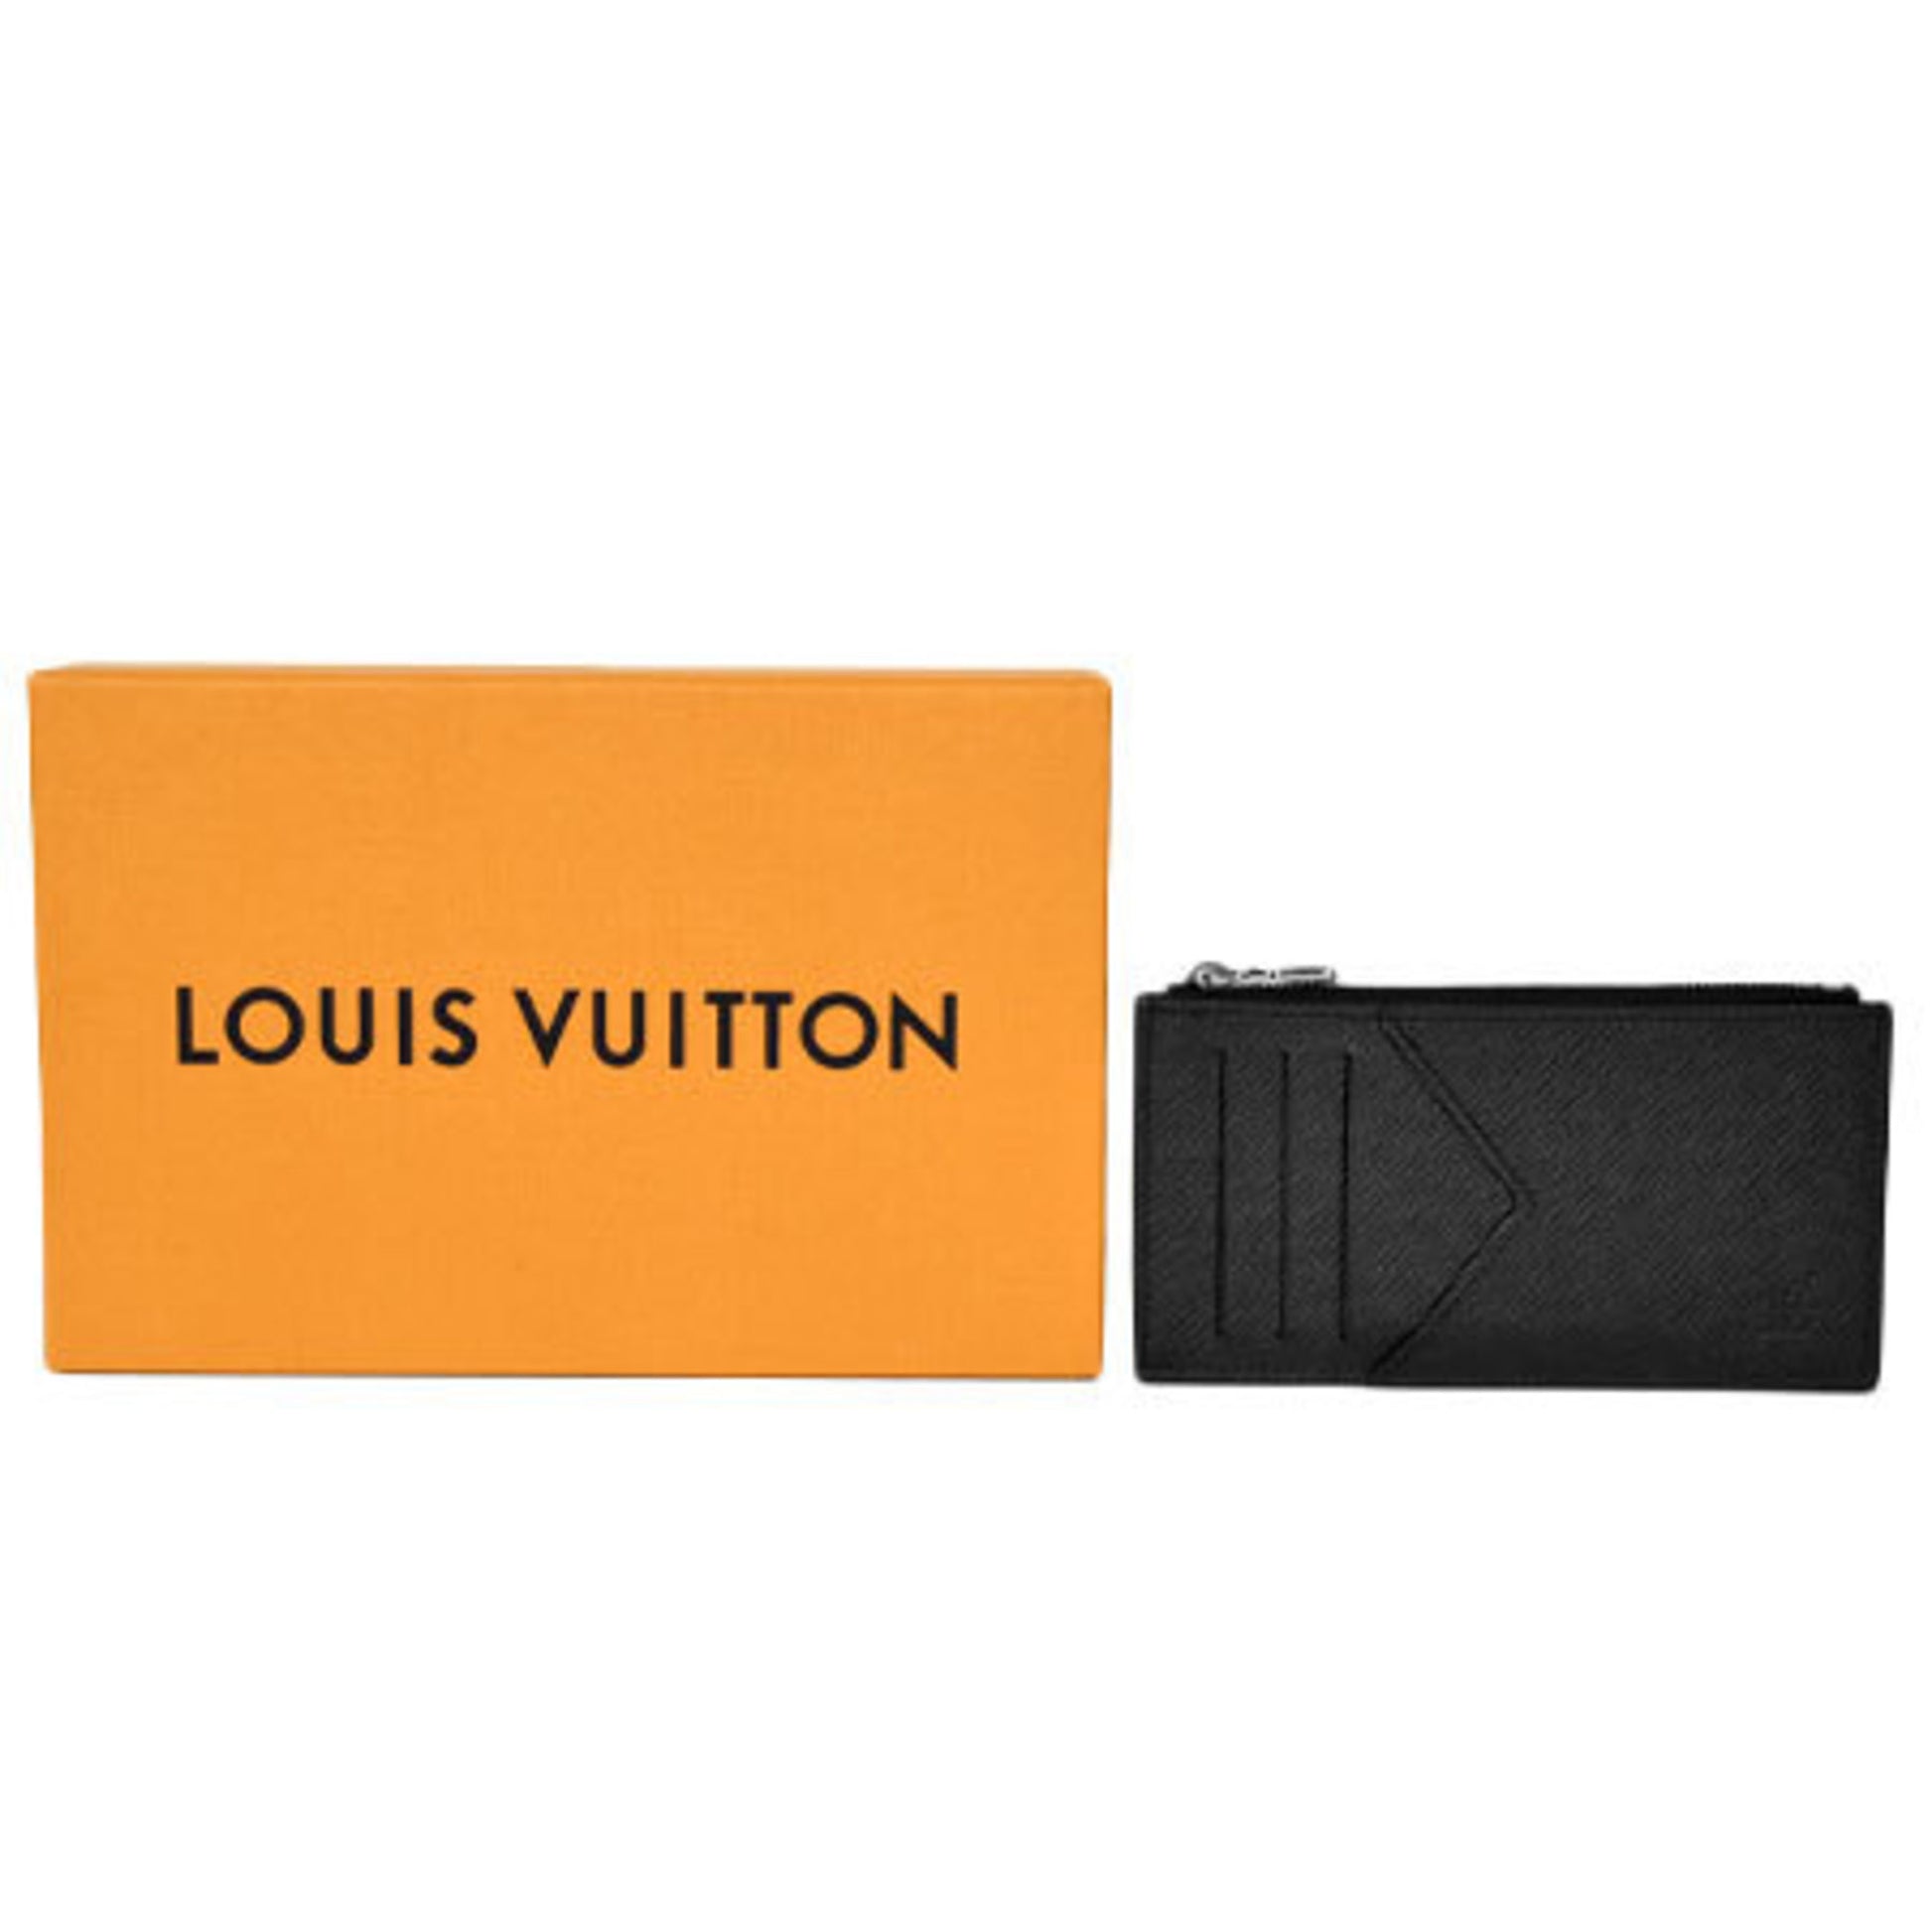 Louis Vuitton TAIGA Coin card holder (M62914) in 2023